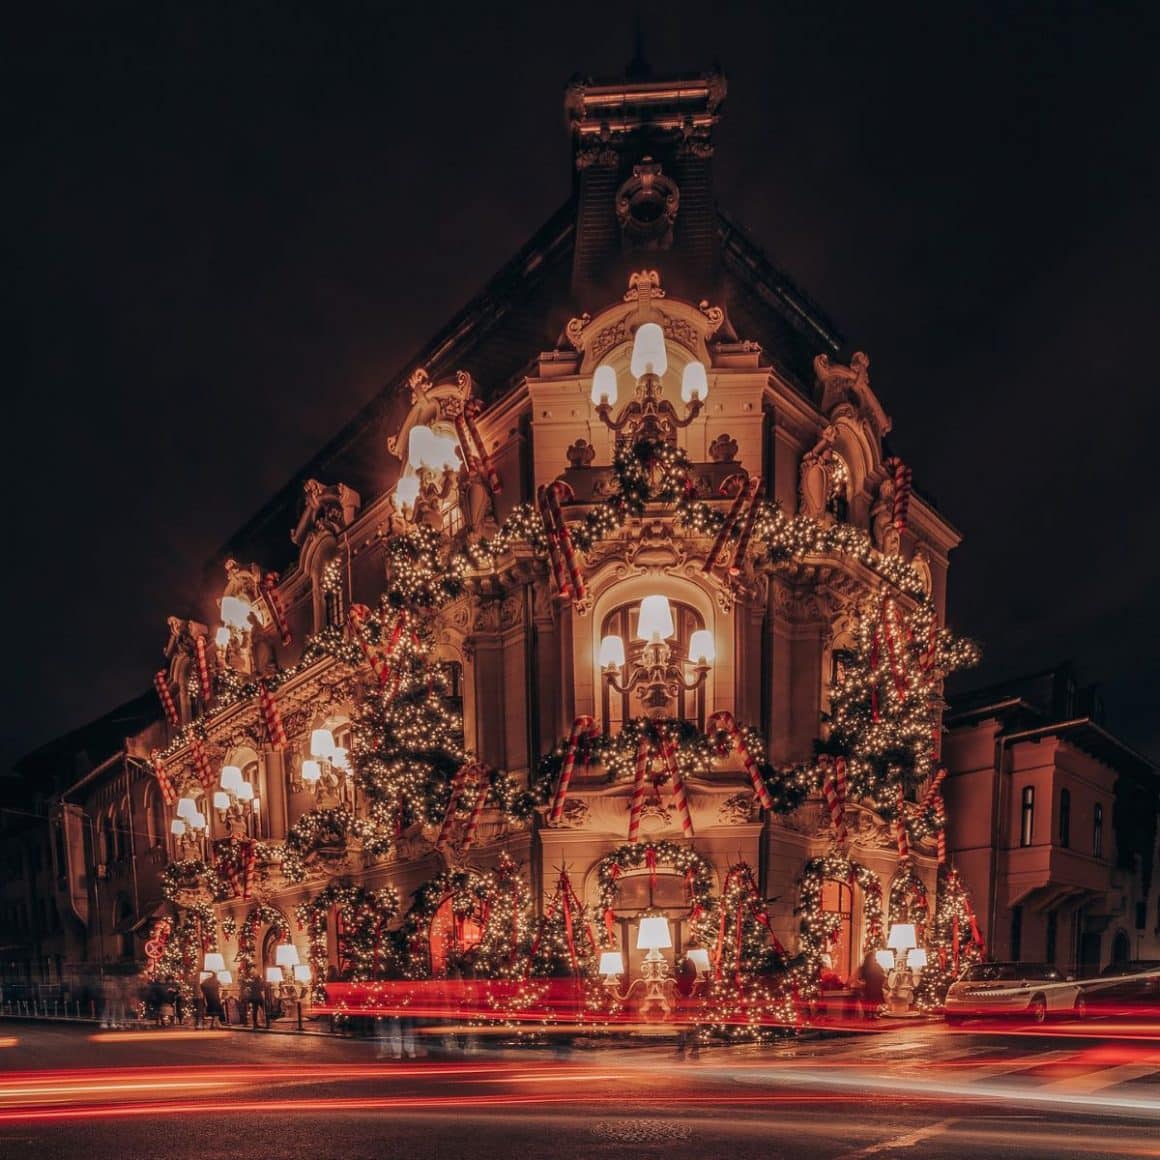 casa miței biciclista din București a fost deorată cu tematica crăciunului și luminată festiv